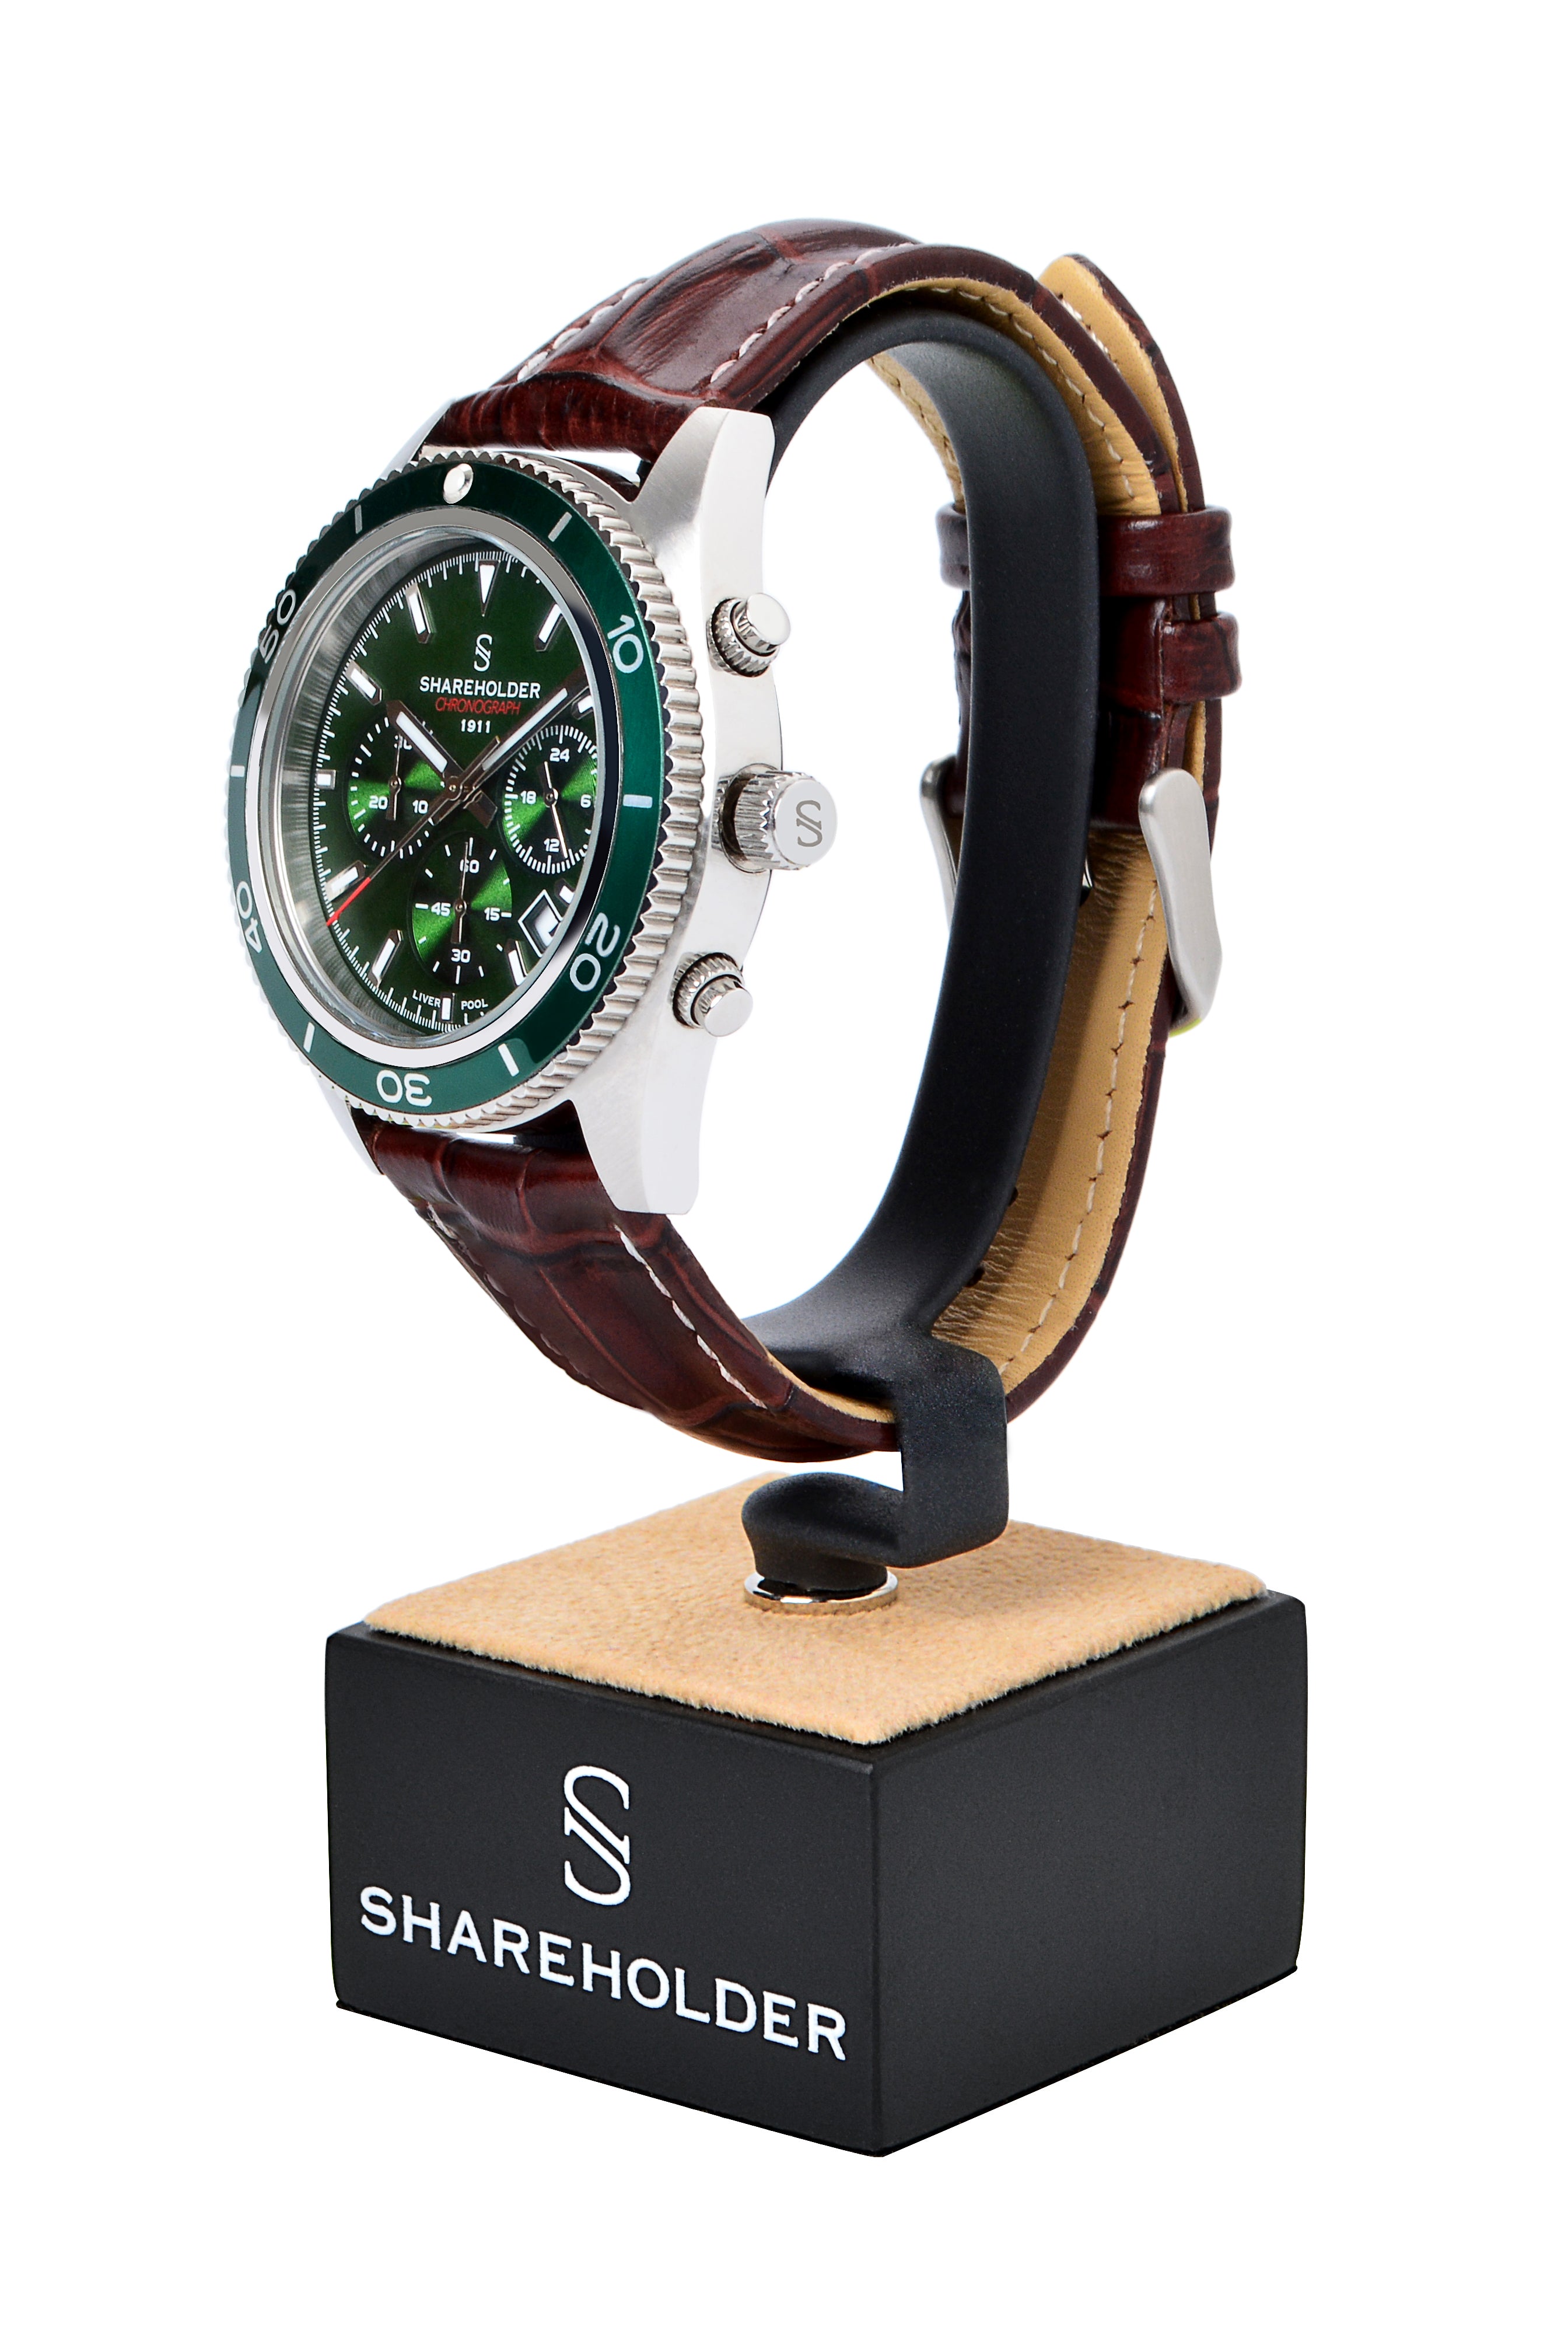 Green Leather ZEALANDE® Watch Rolls